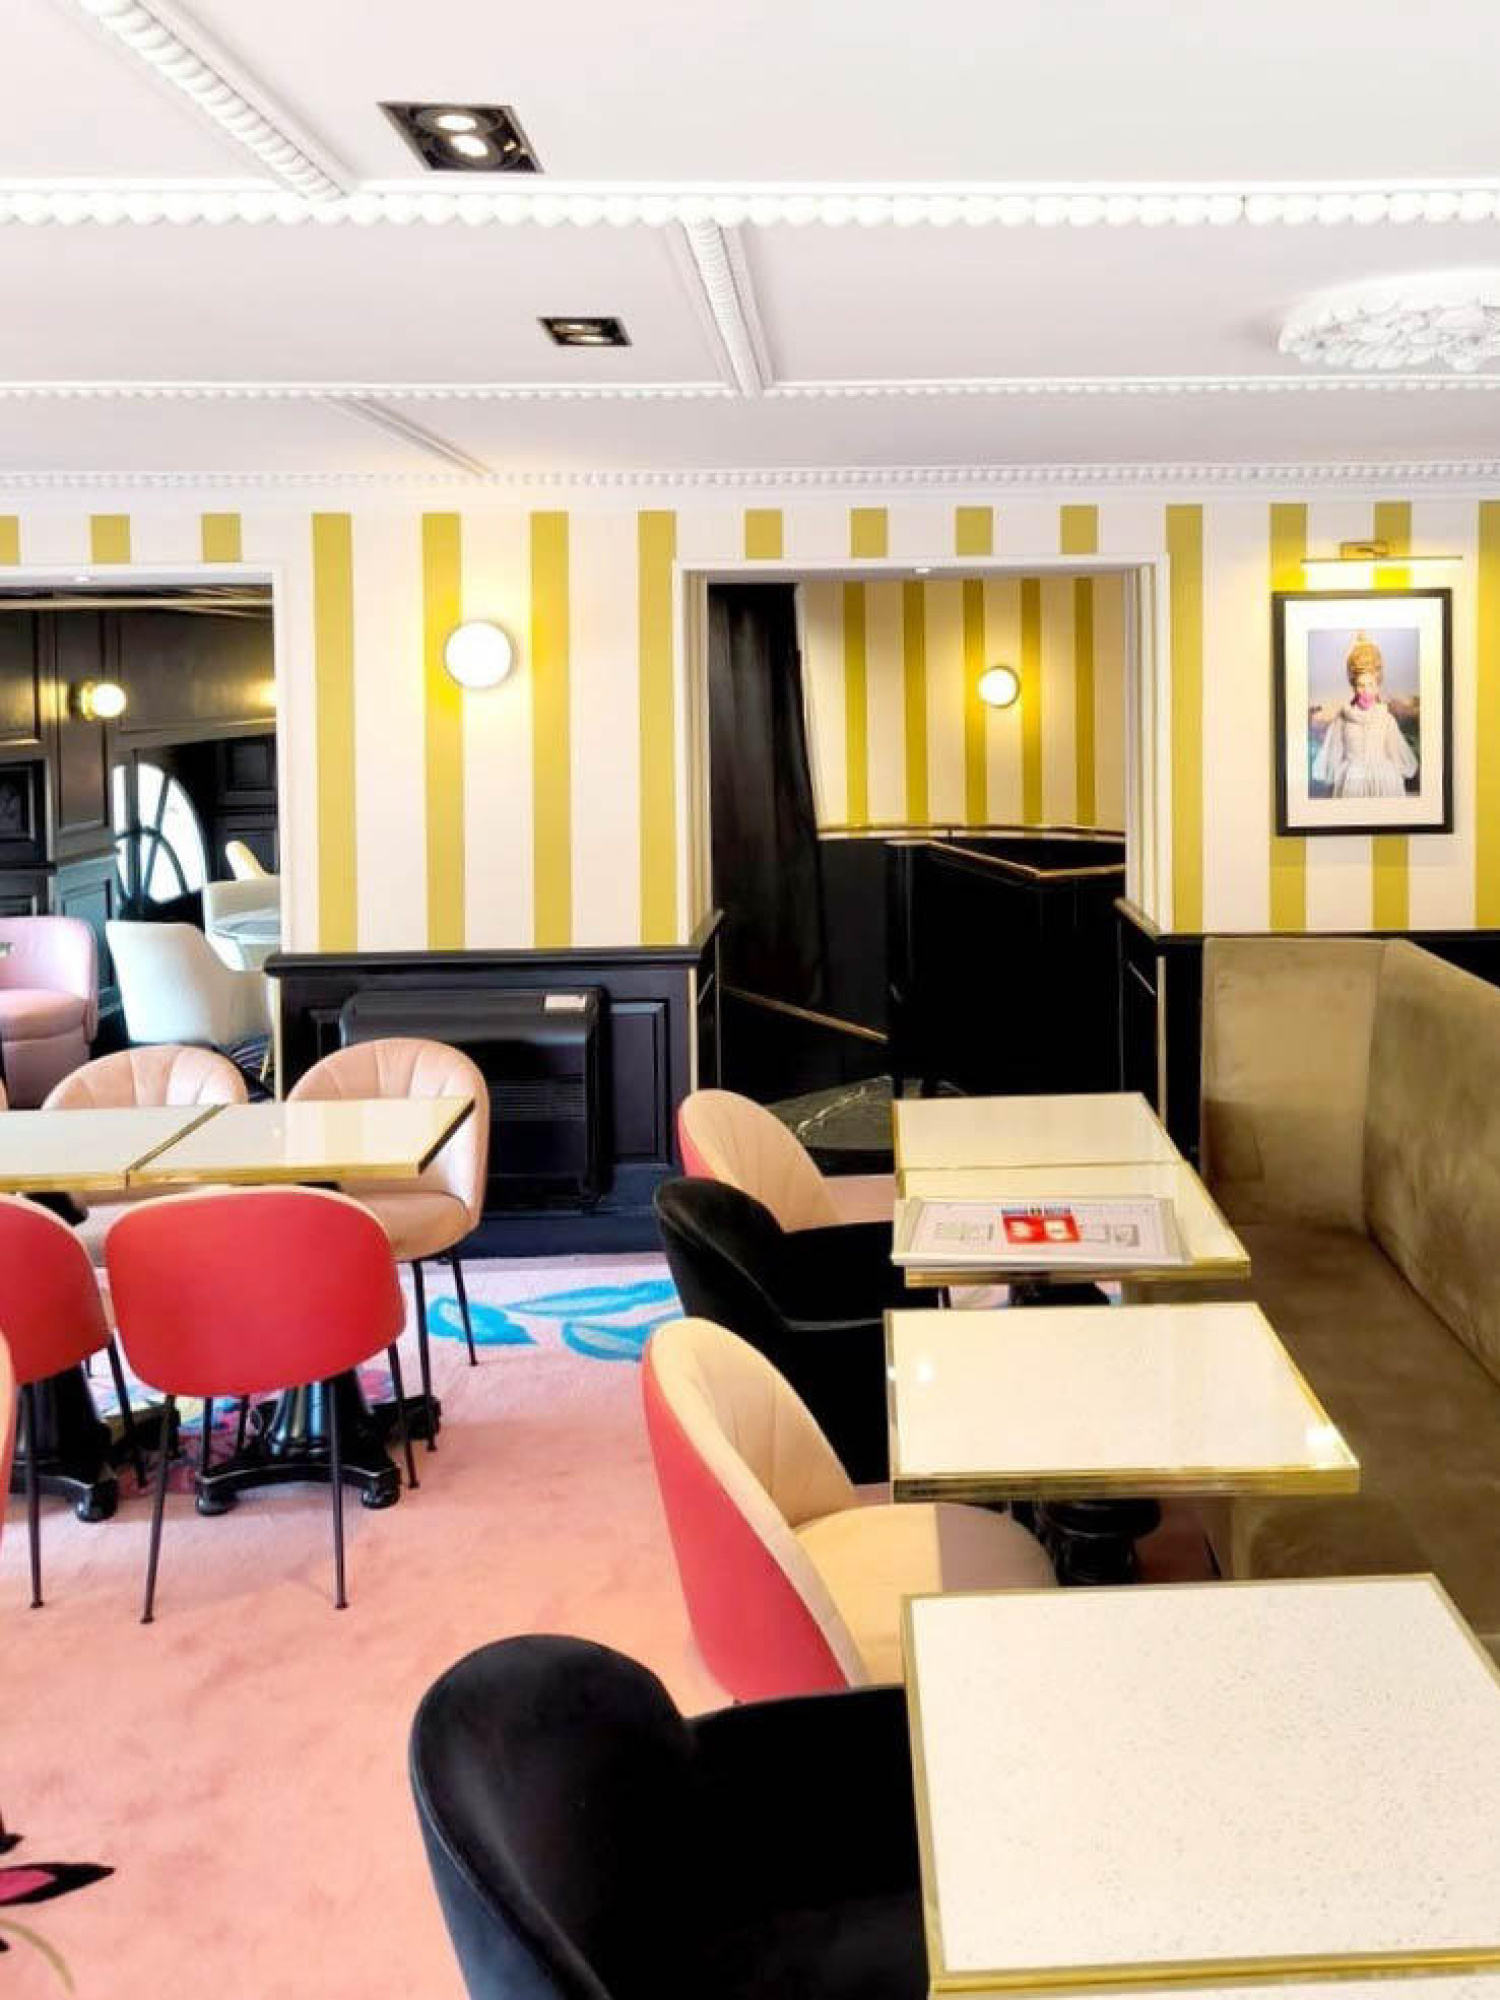 RESTAURANTE LE GRAND CAFÉ FOY EN NANCY - IBFOR - Your design shop